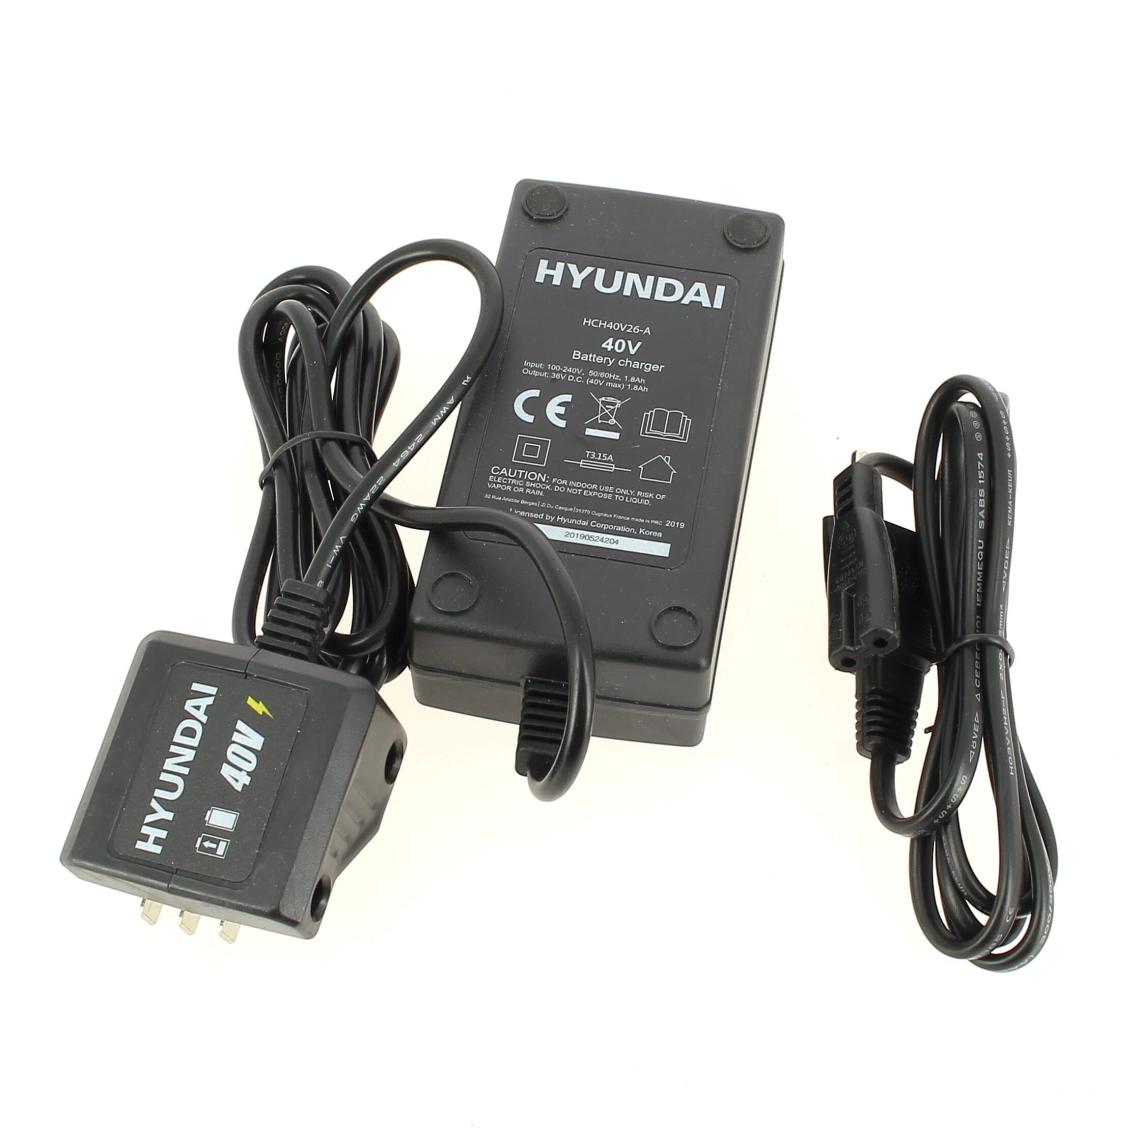 Hyundai - Chargeur de batterie 40v 1,8ah pour Taille-haie Hyundai - Consommables pour outillage motorisé